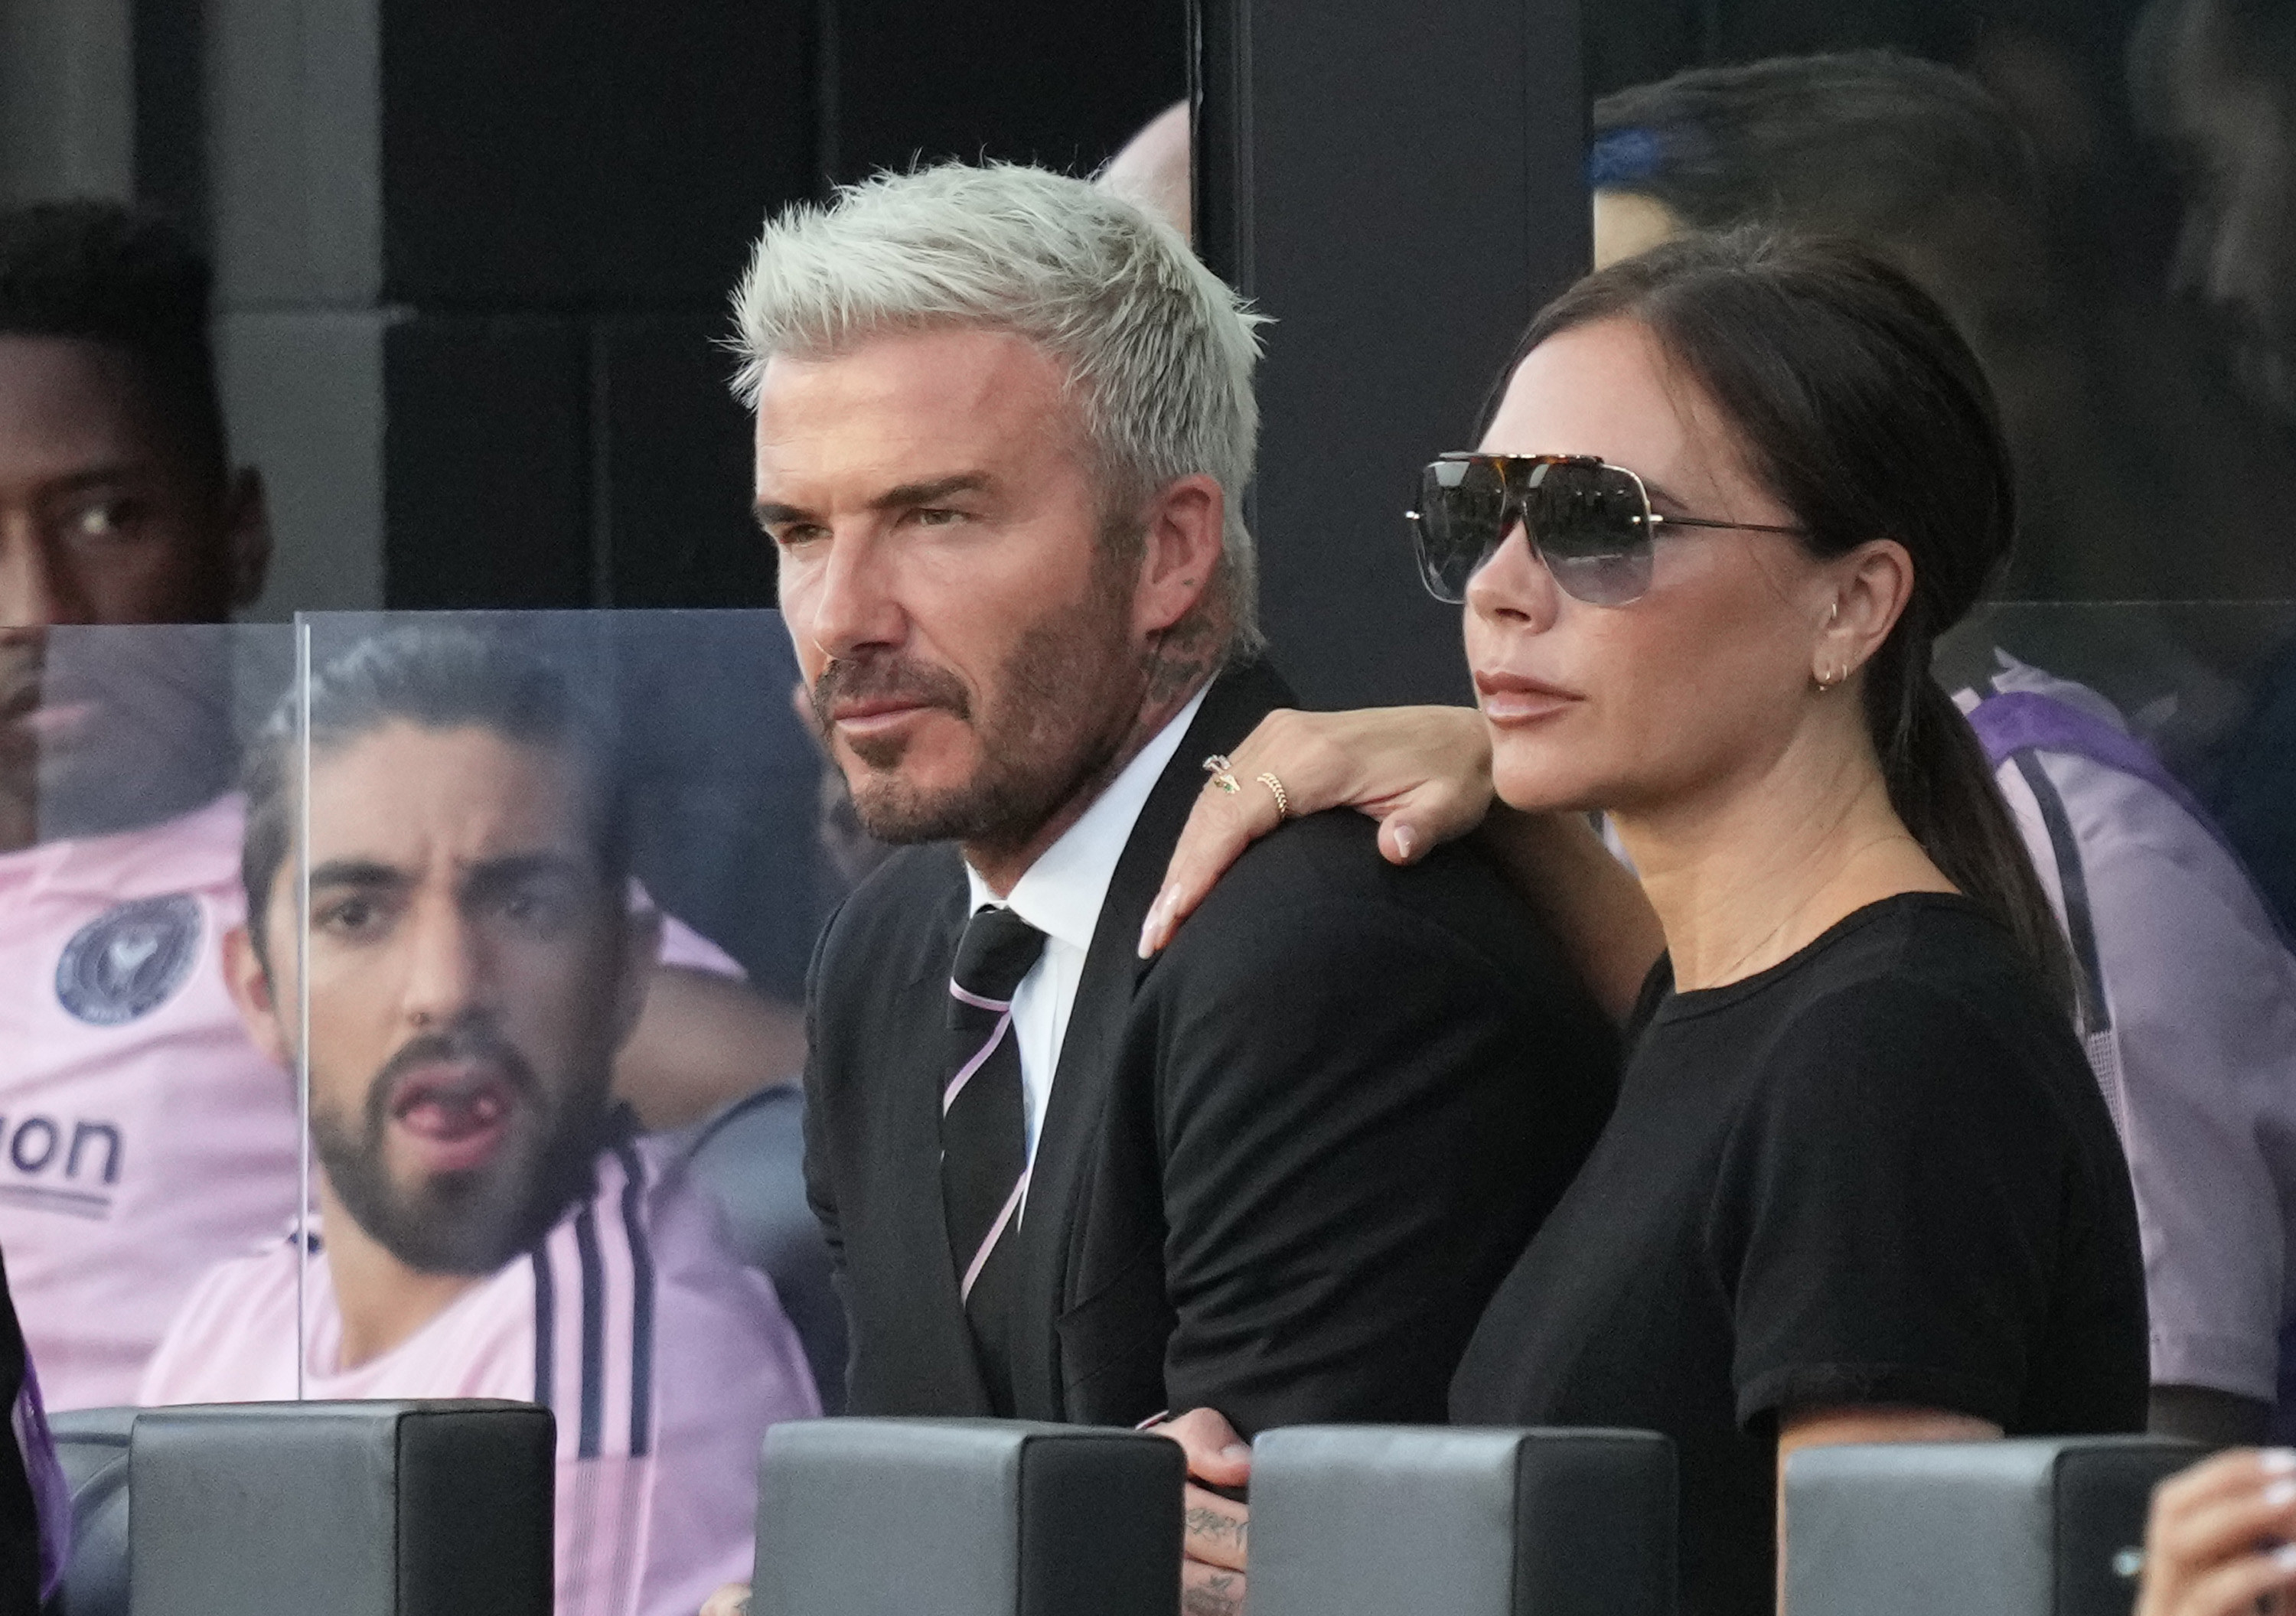 David Beckham and Victoria Beckham at a soccer match in August 2021